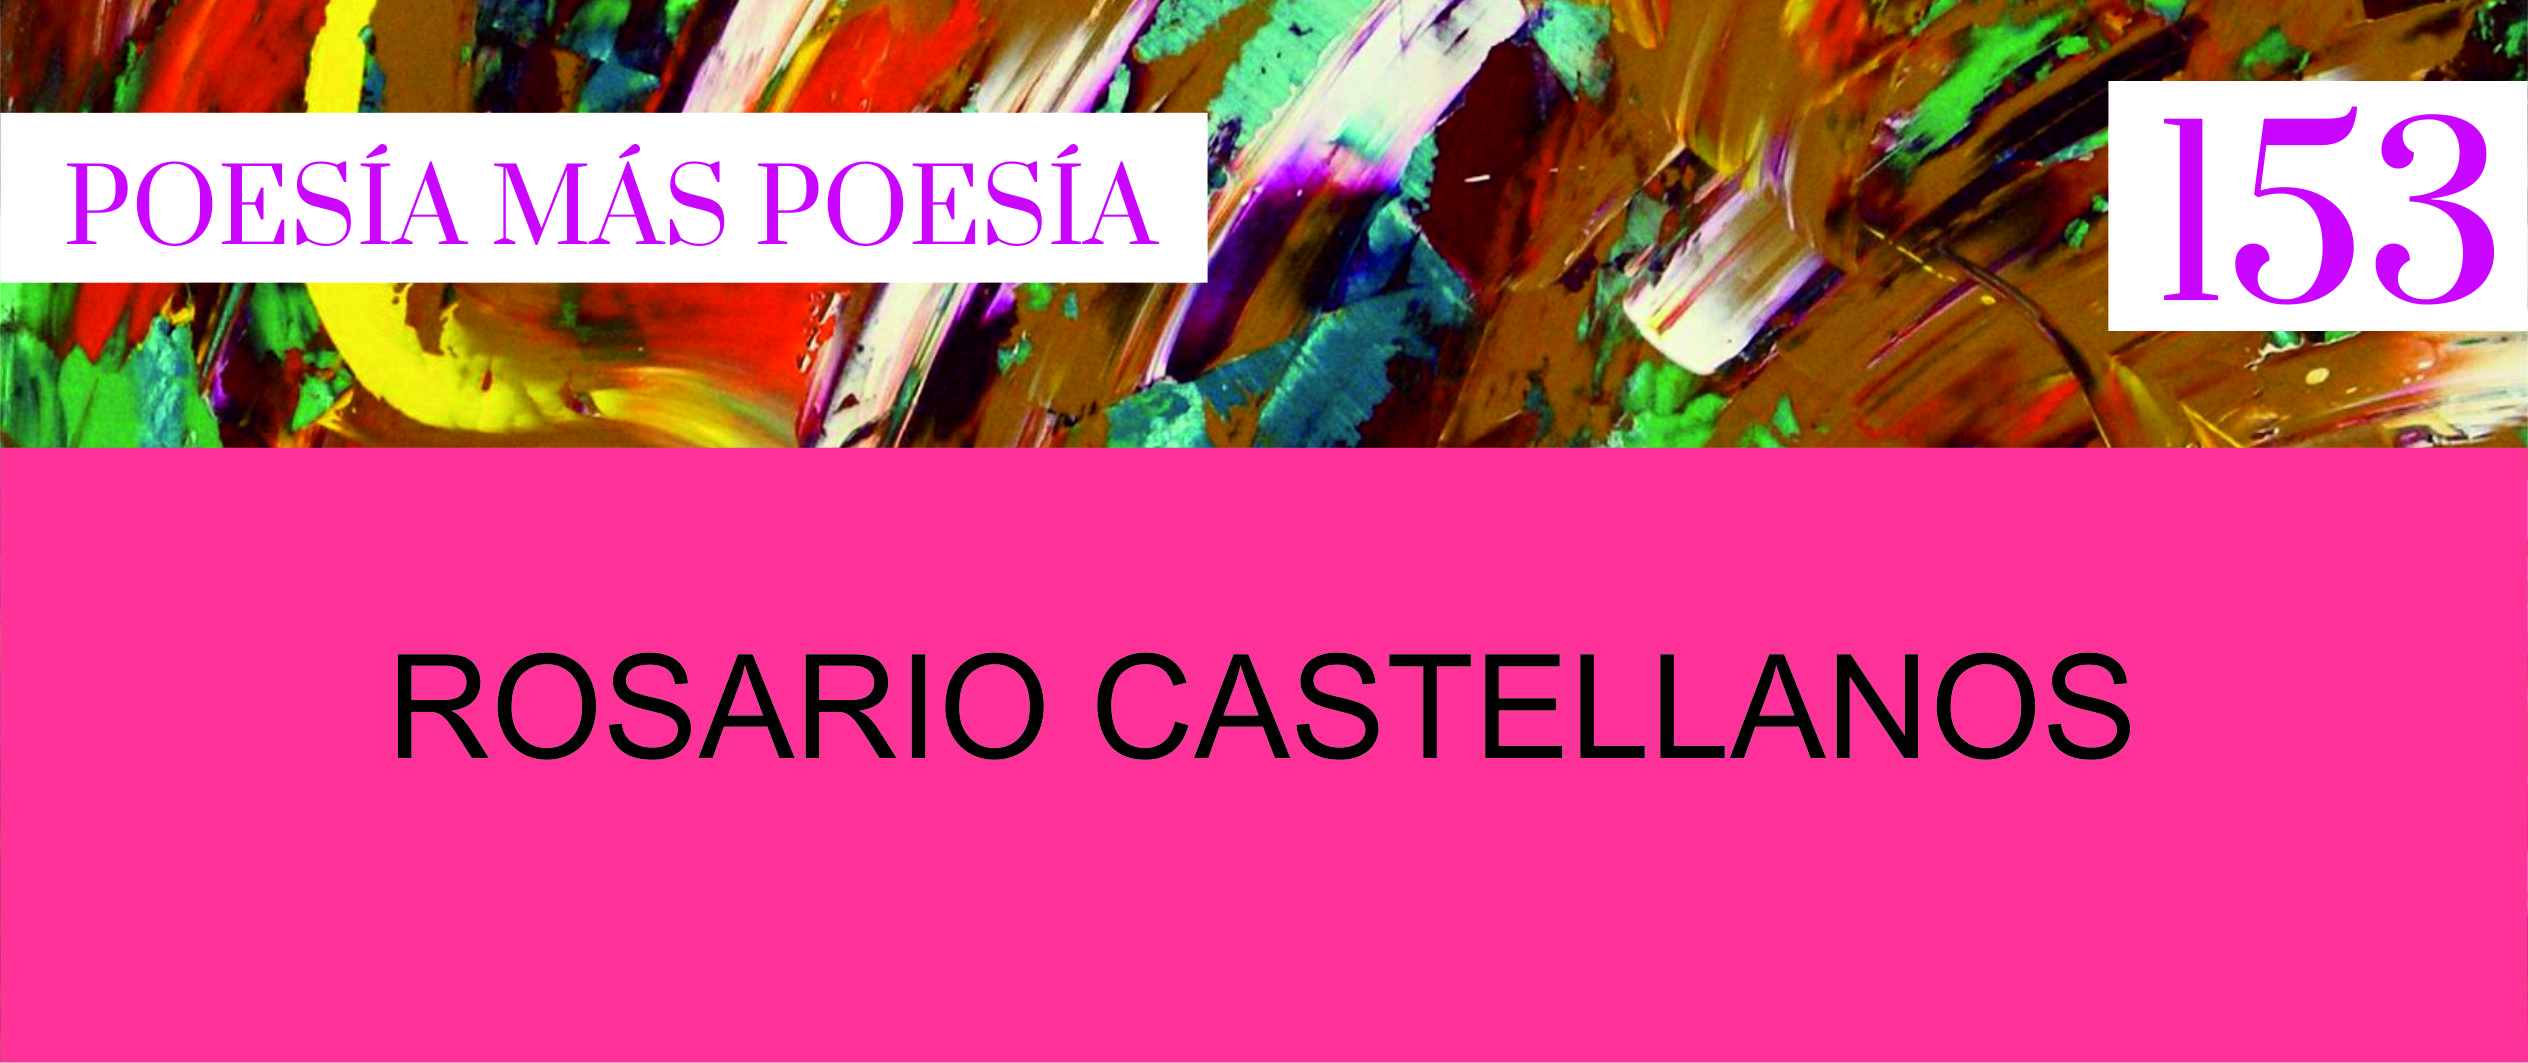 153. Poesía más Poesía: Rosario Castellanos